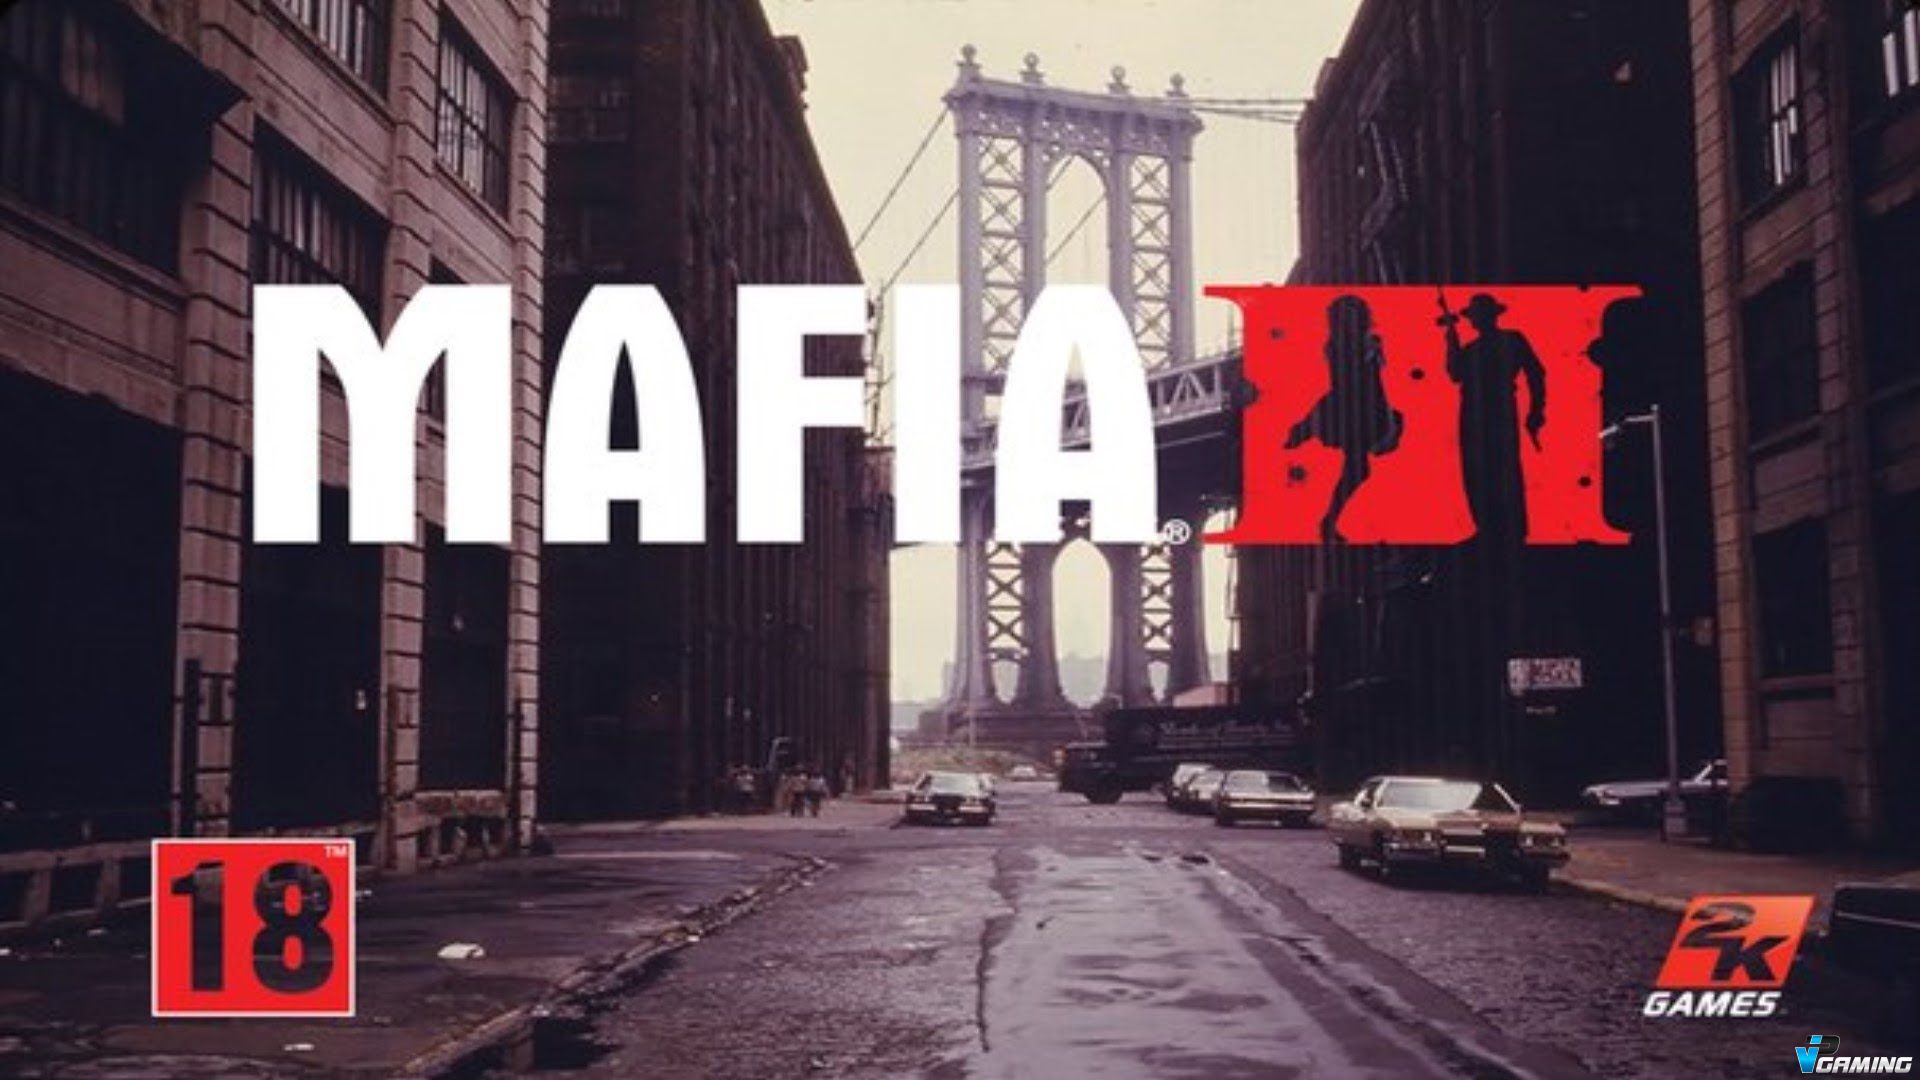 Mafia 3 